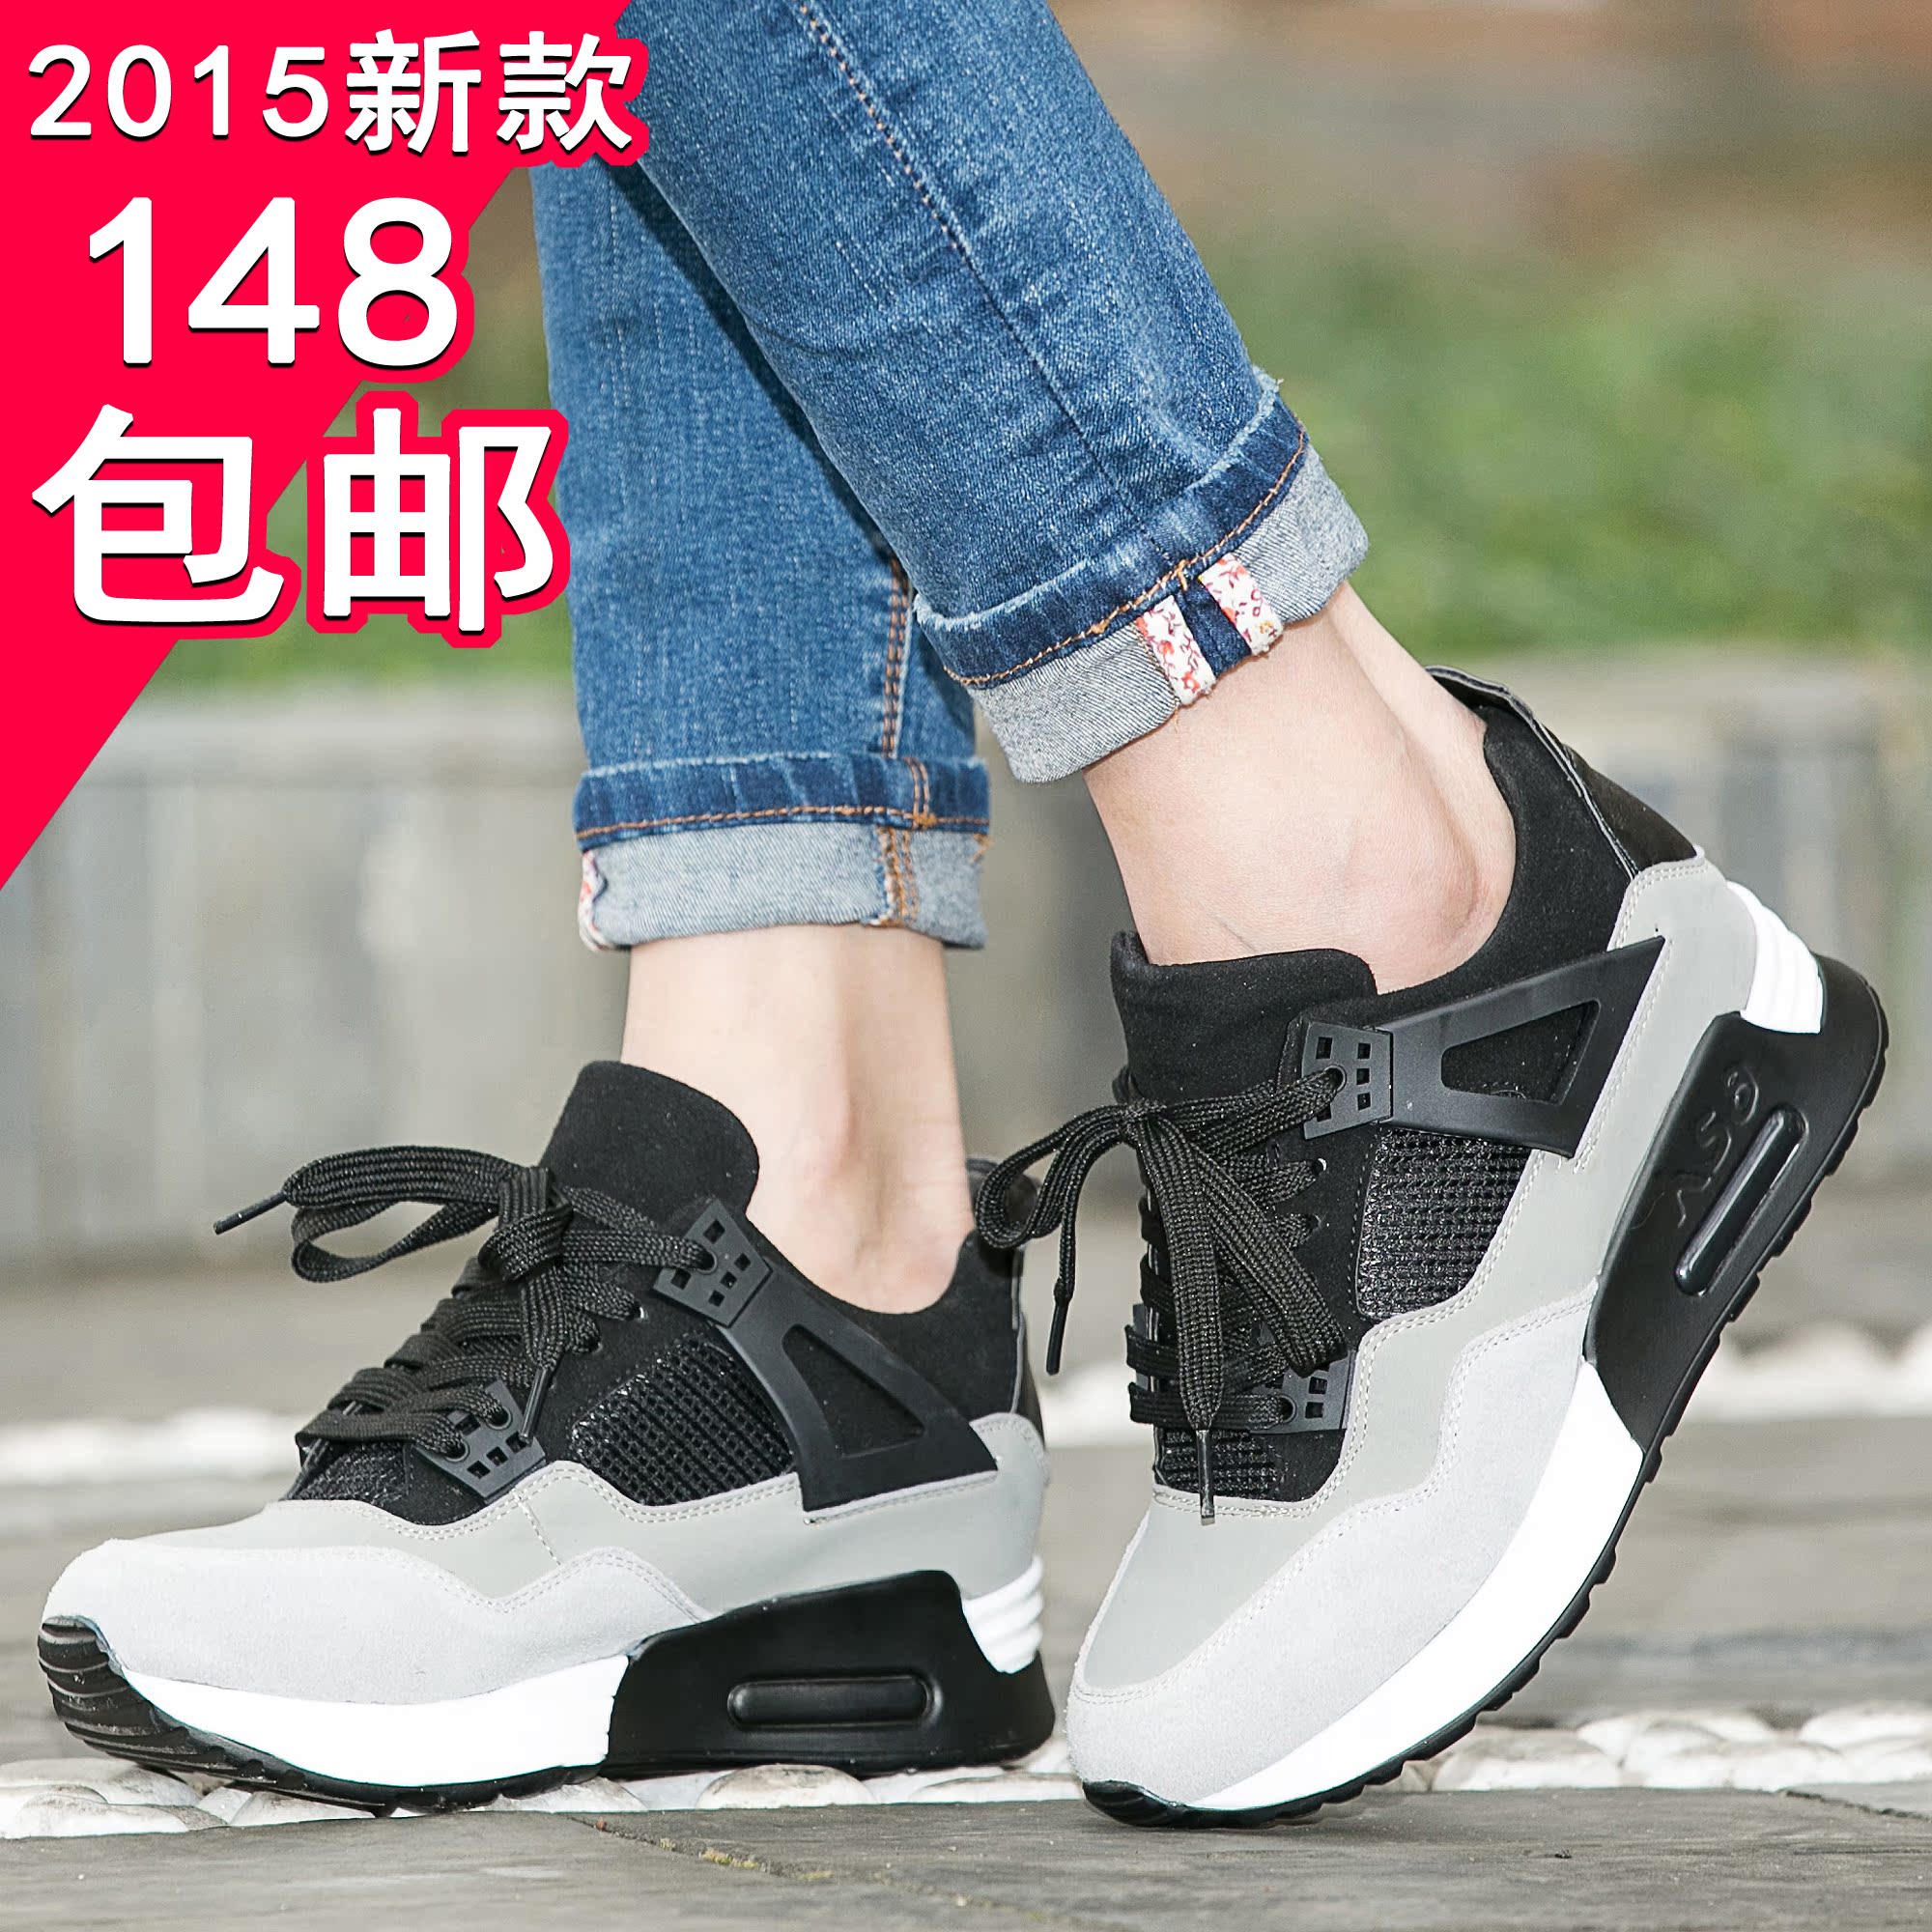 2015春季新款韩版时尚休闲运动潮鞋松糕厚底平跟跑步鞋女鞋黑白色